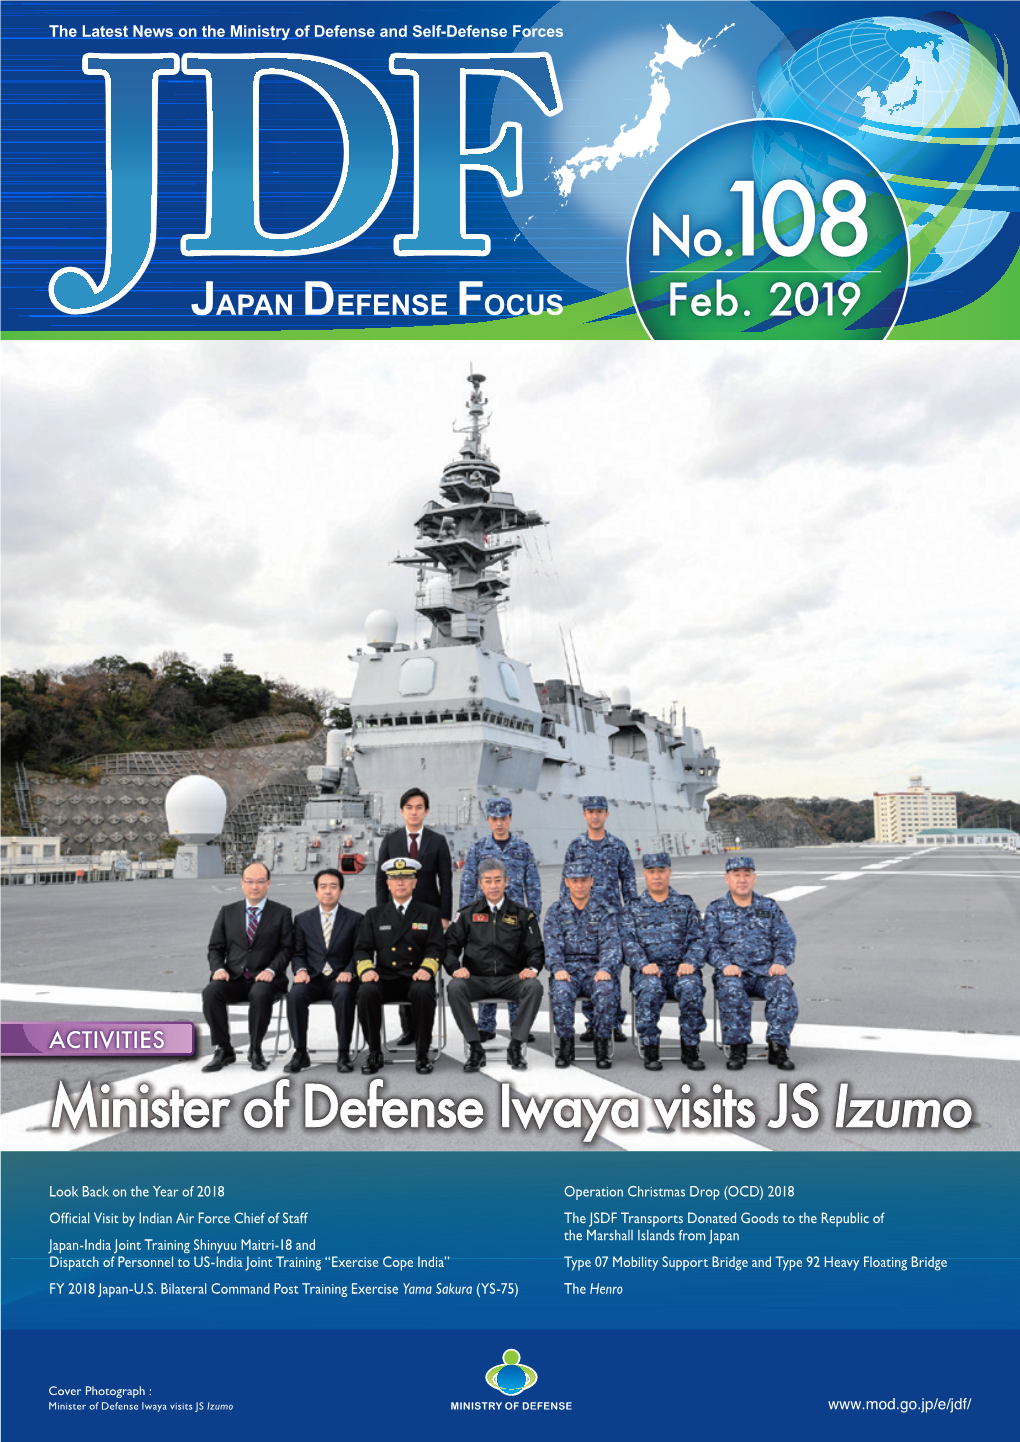 Japan Defense Focus No.108